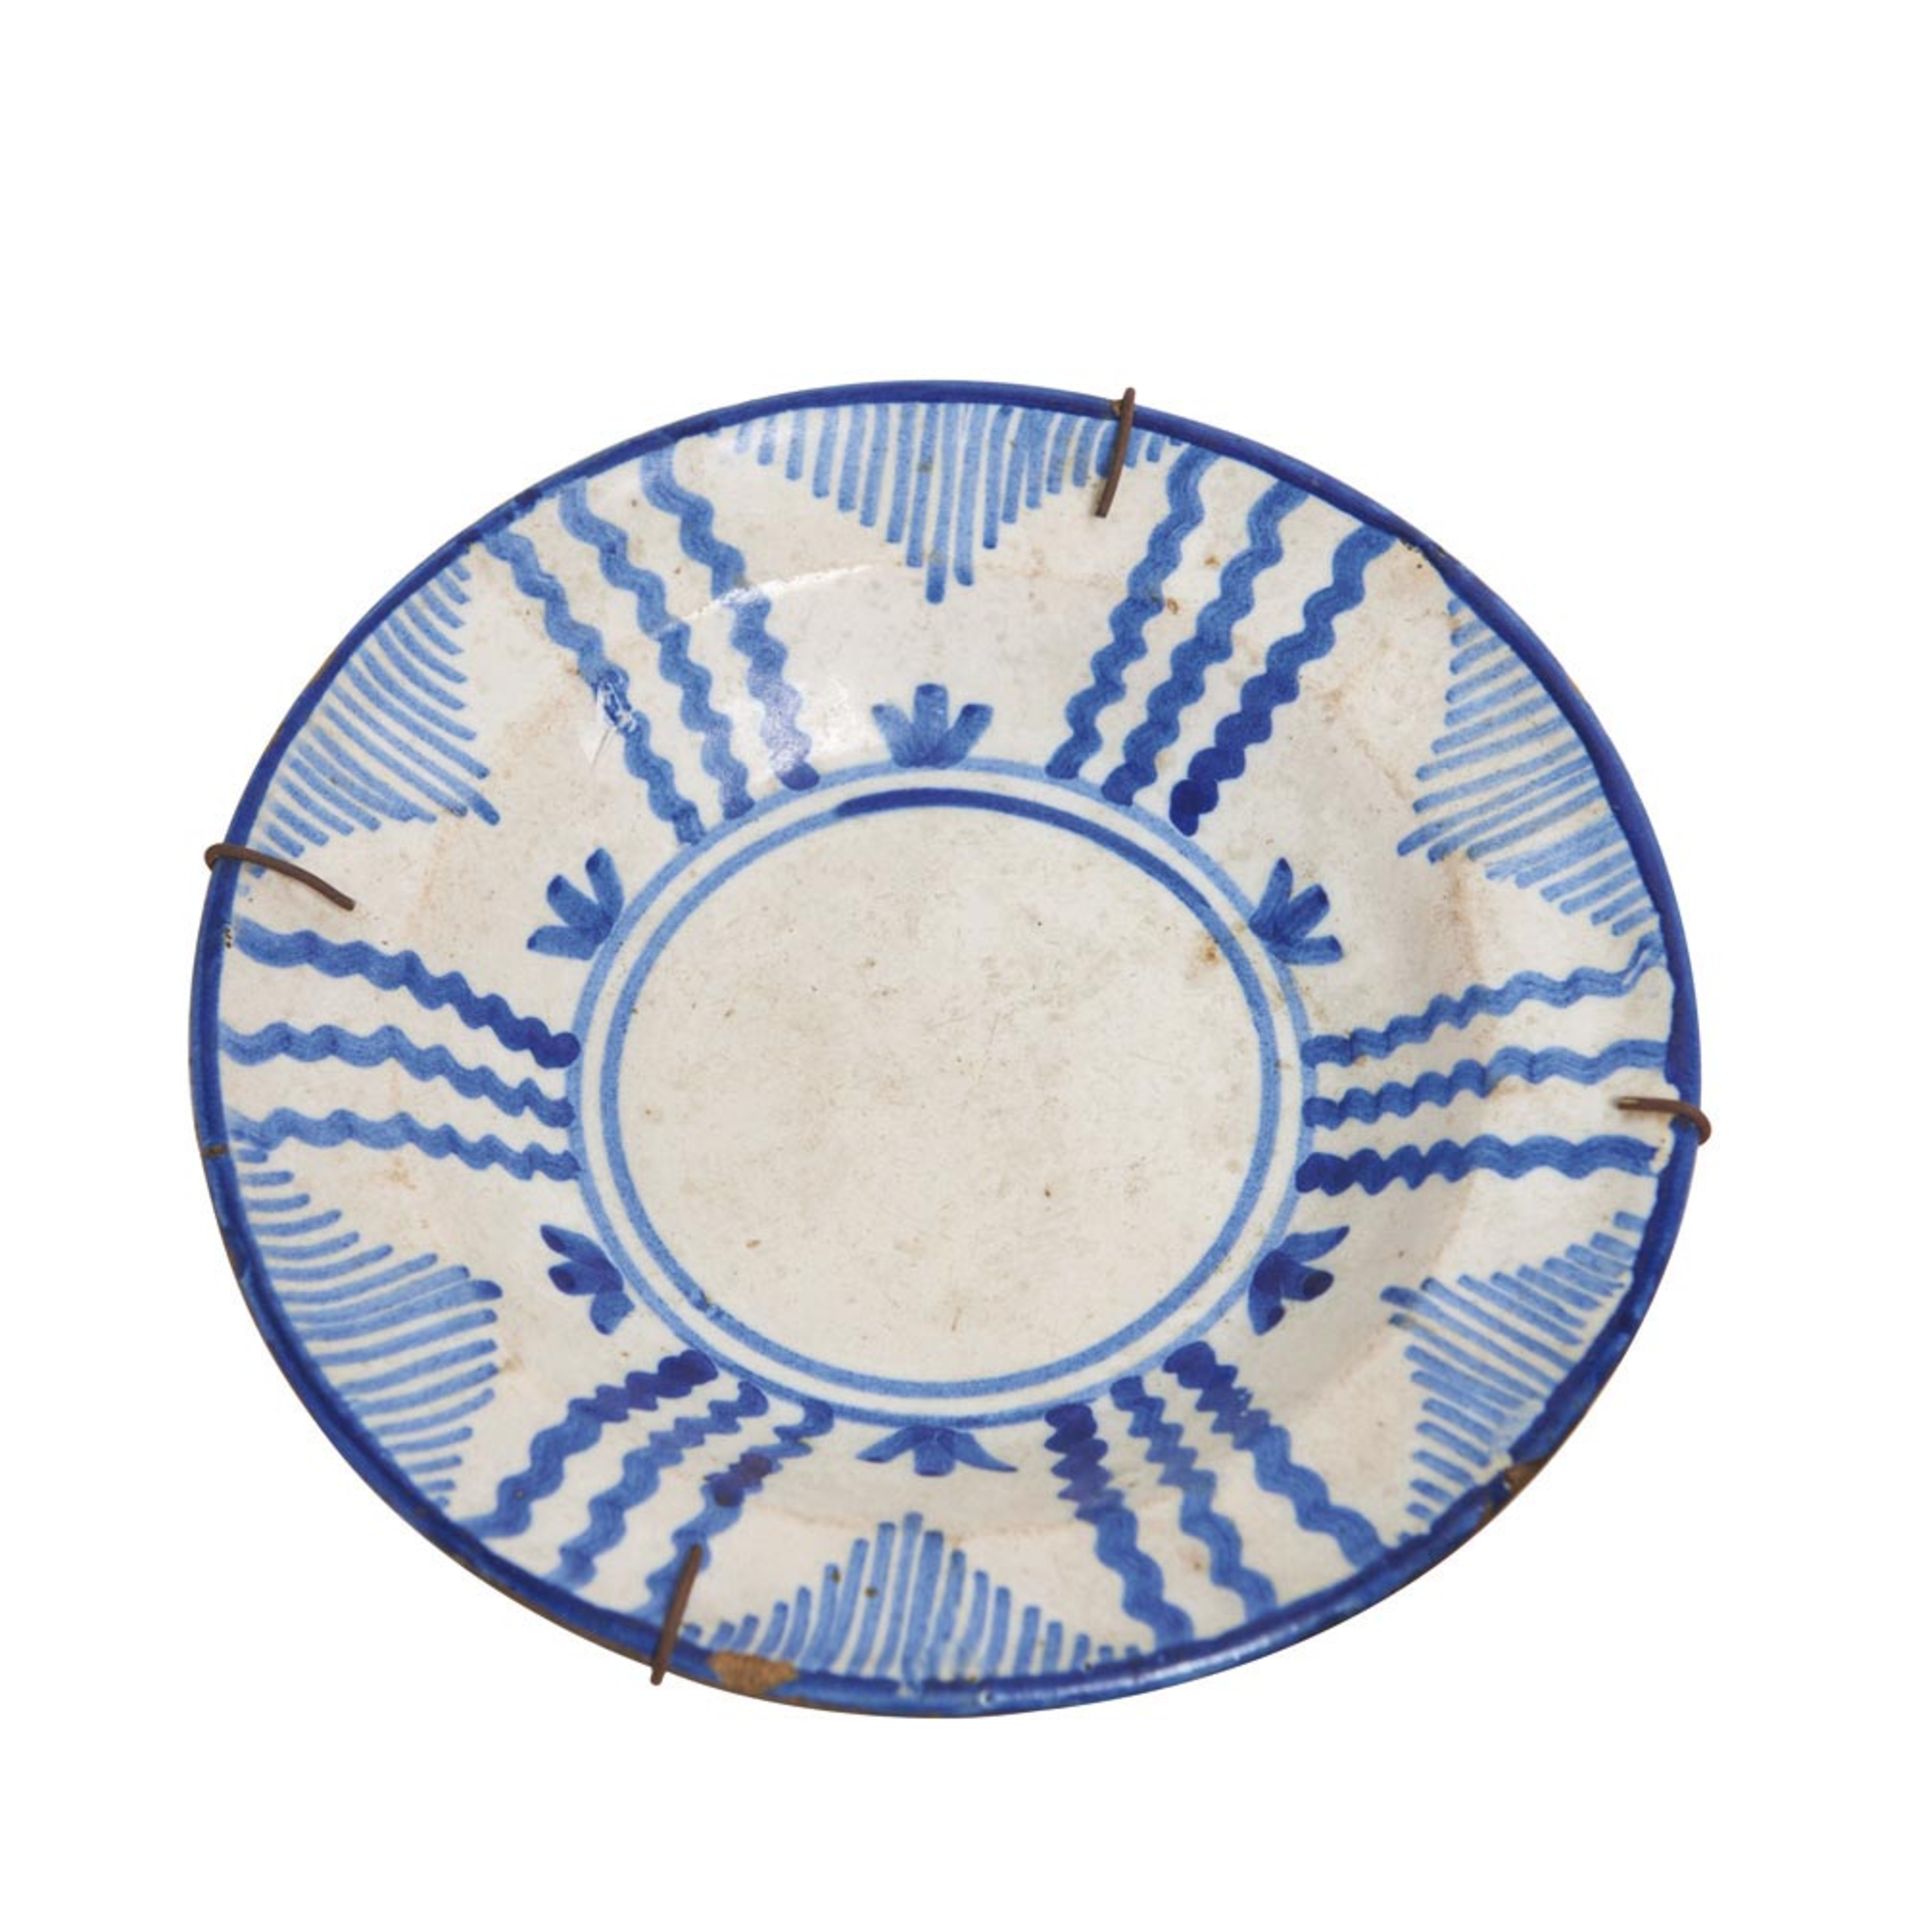 Spanish blue and white glazed ceramic plates 19th century. Plato de Manises en cerámica esmaltada - Bild 3 aus 3